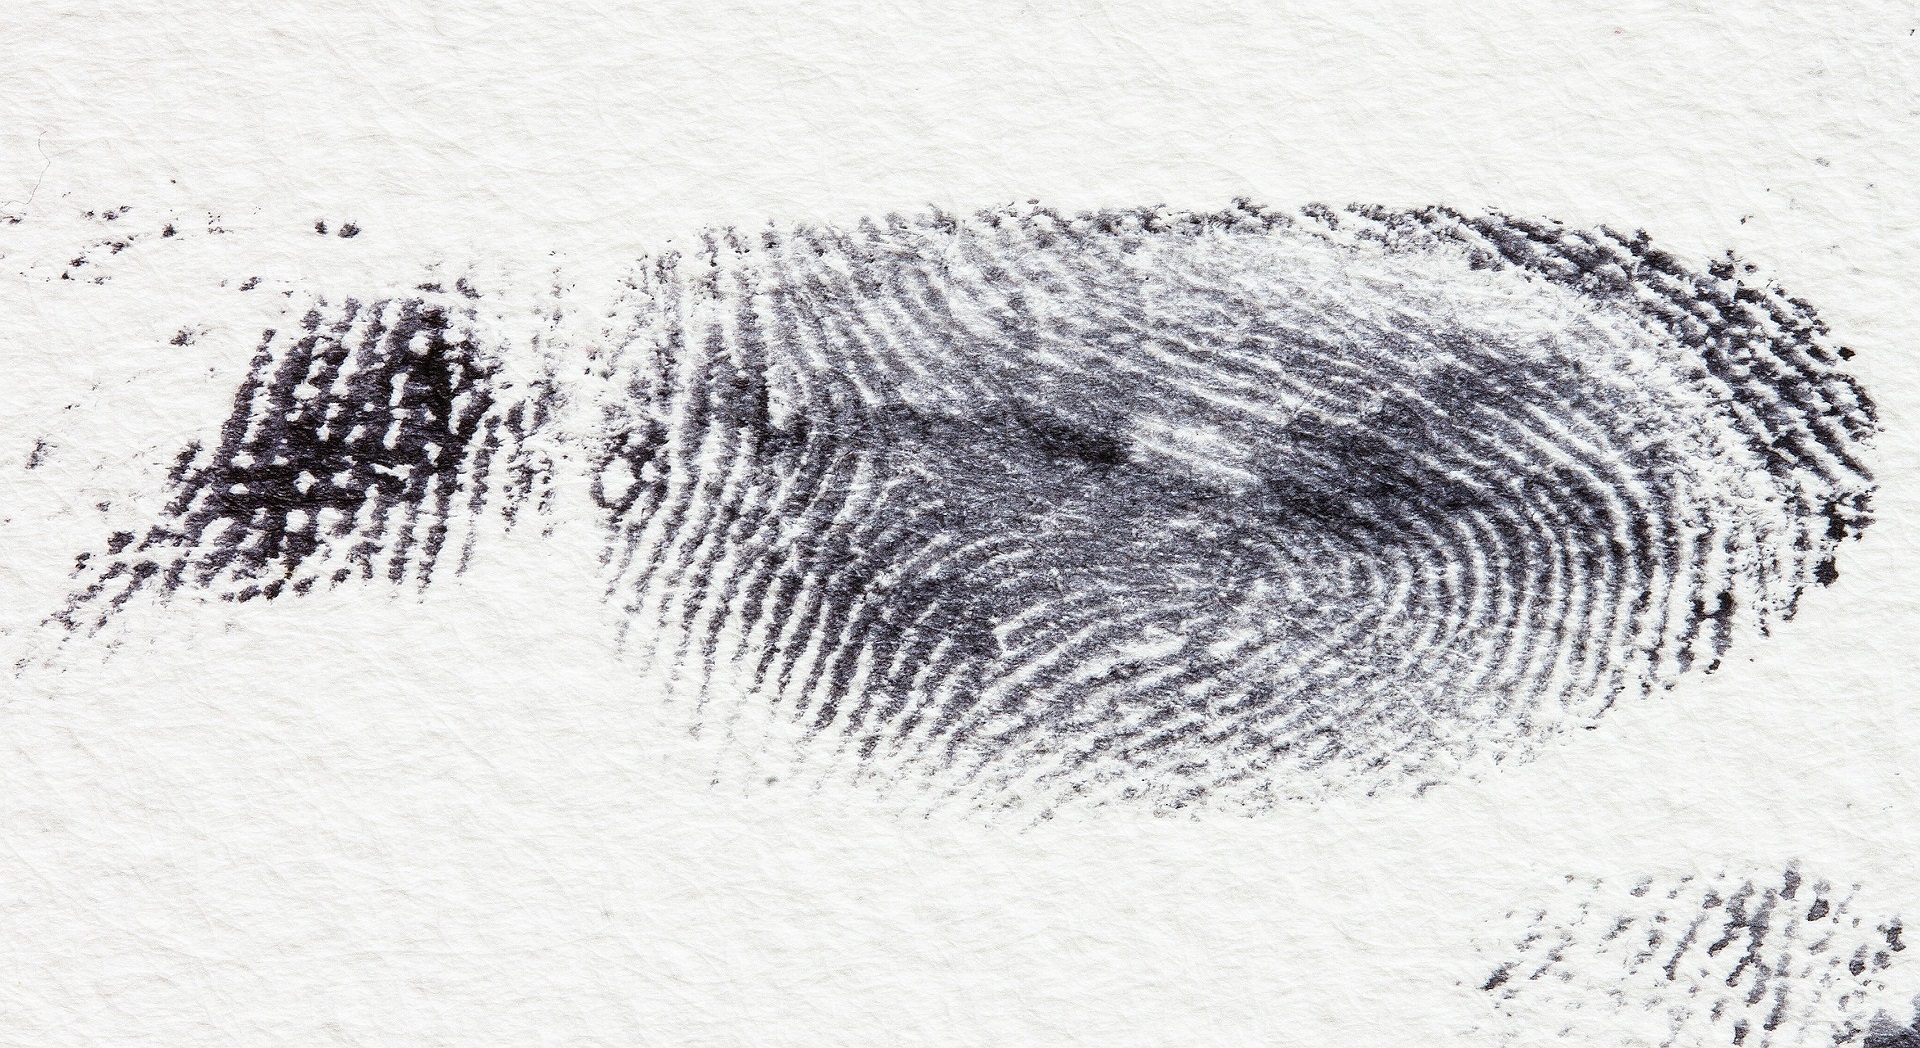 fingerprint-255897_1920